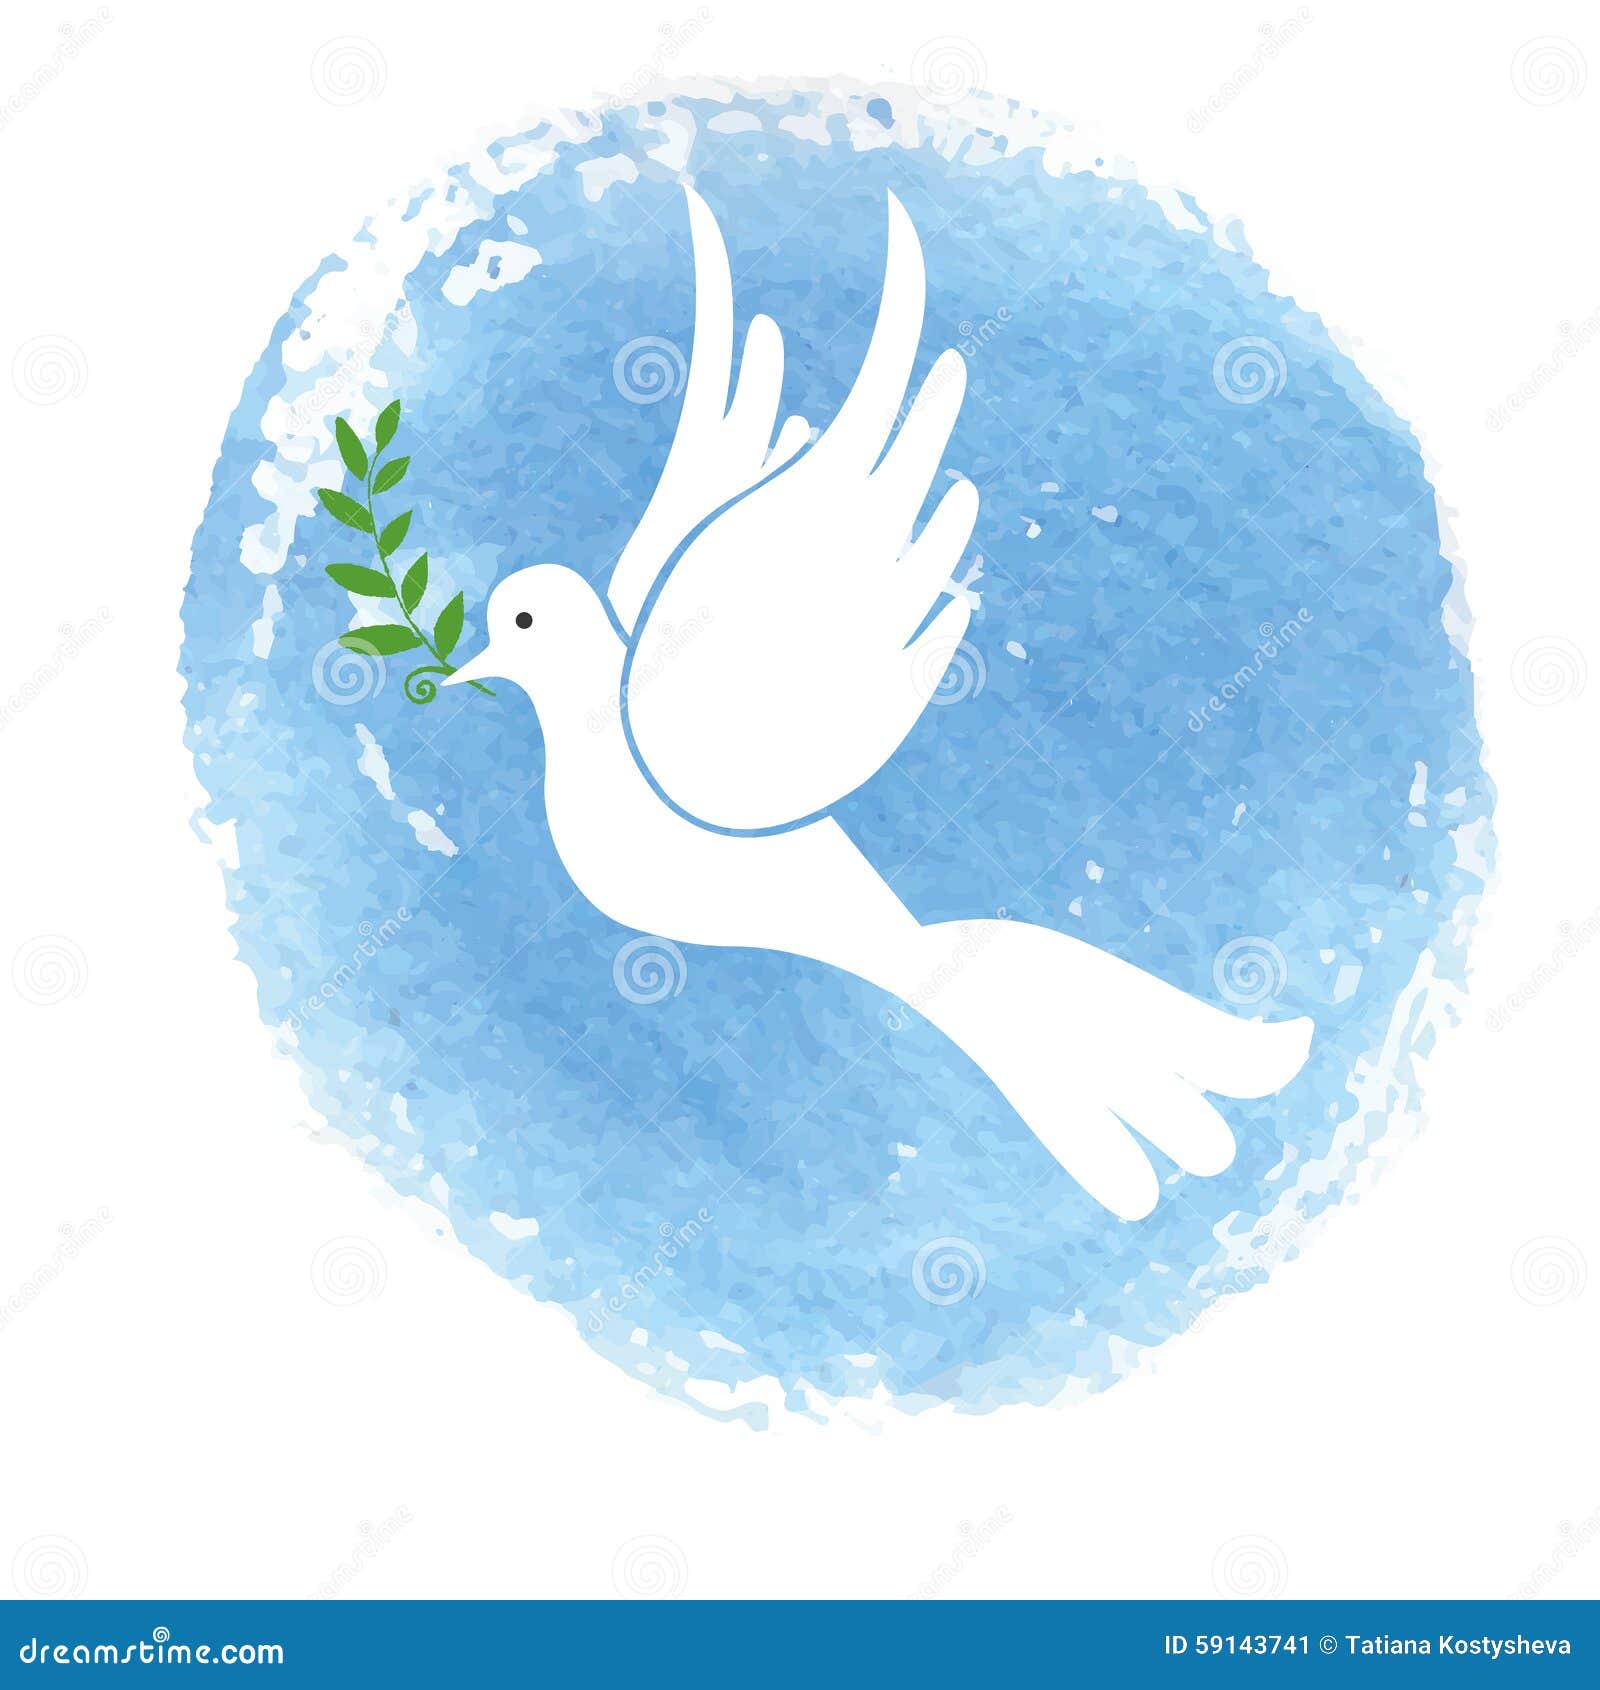 ООН символ голубь мира